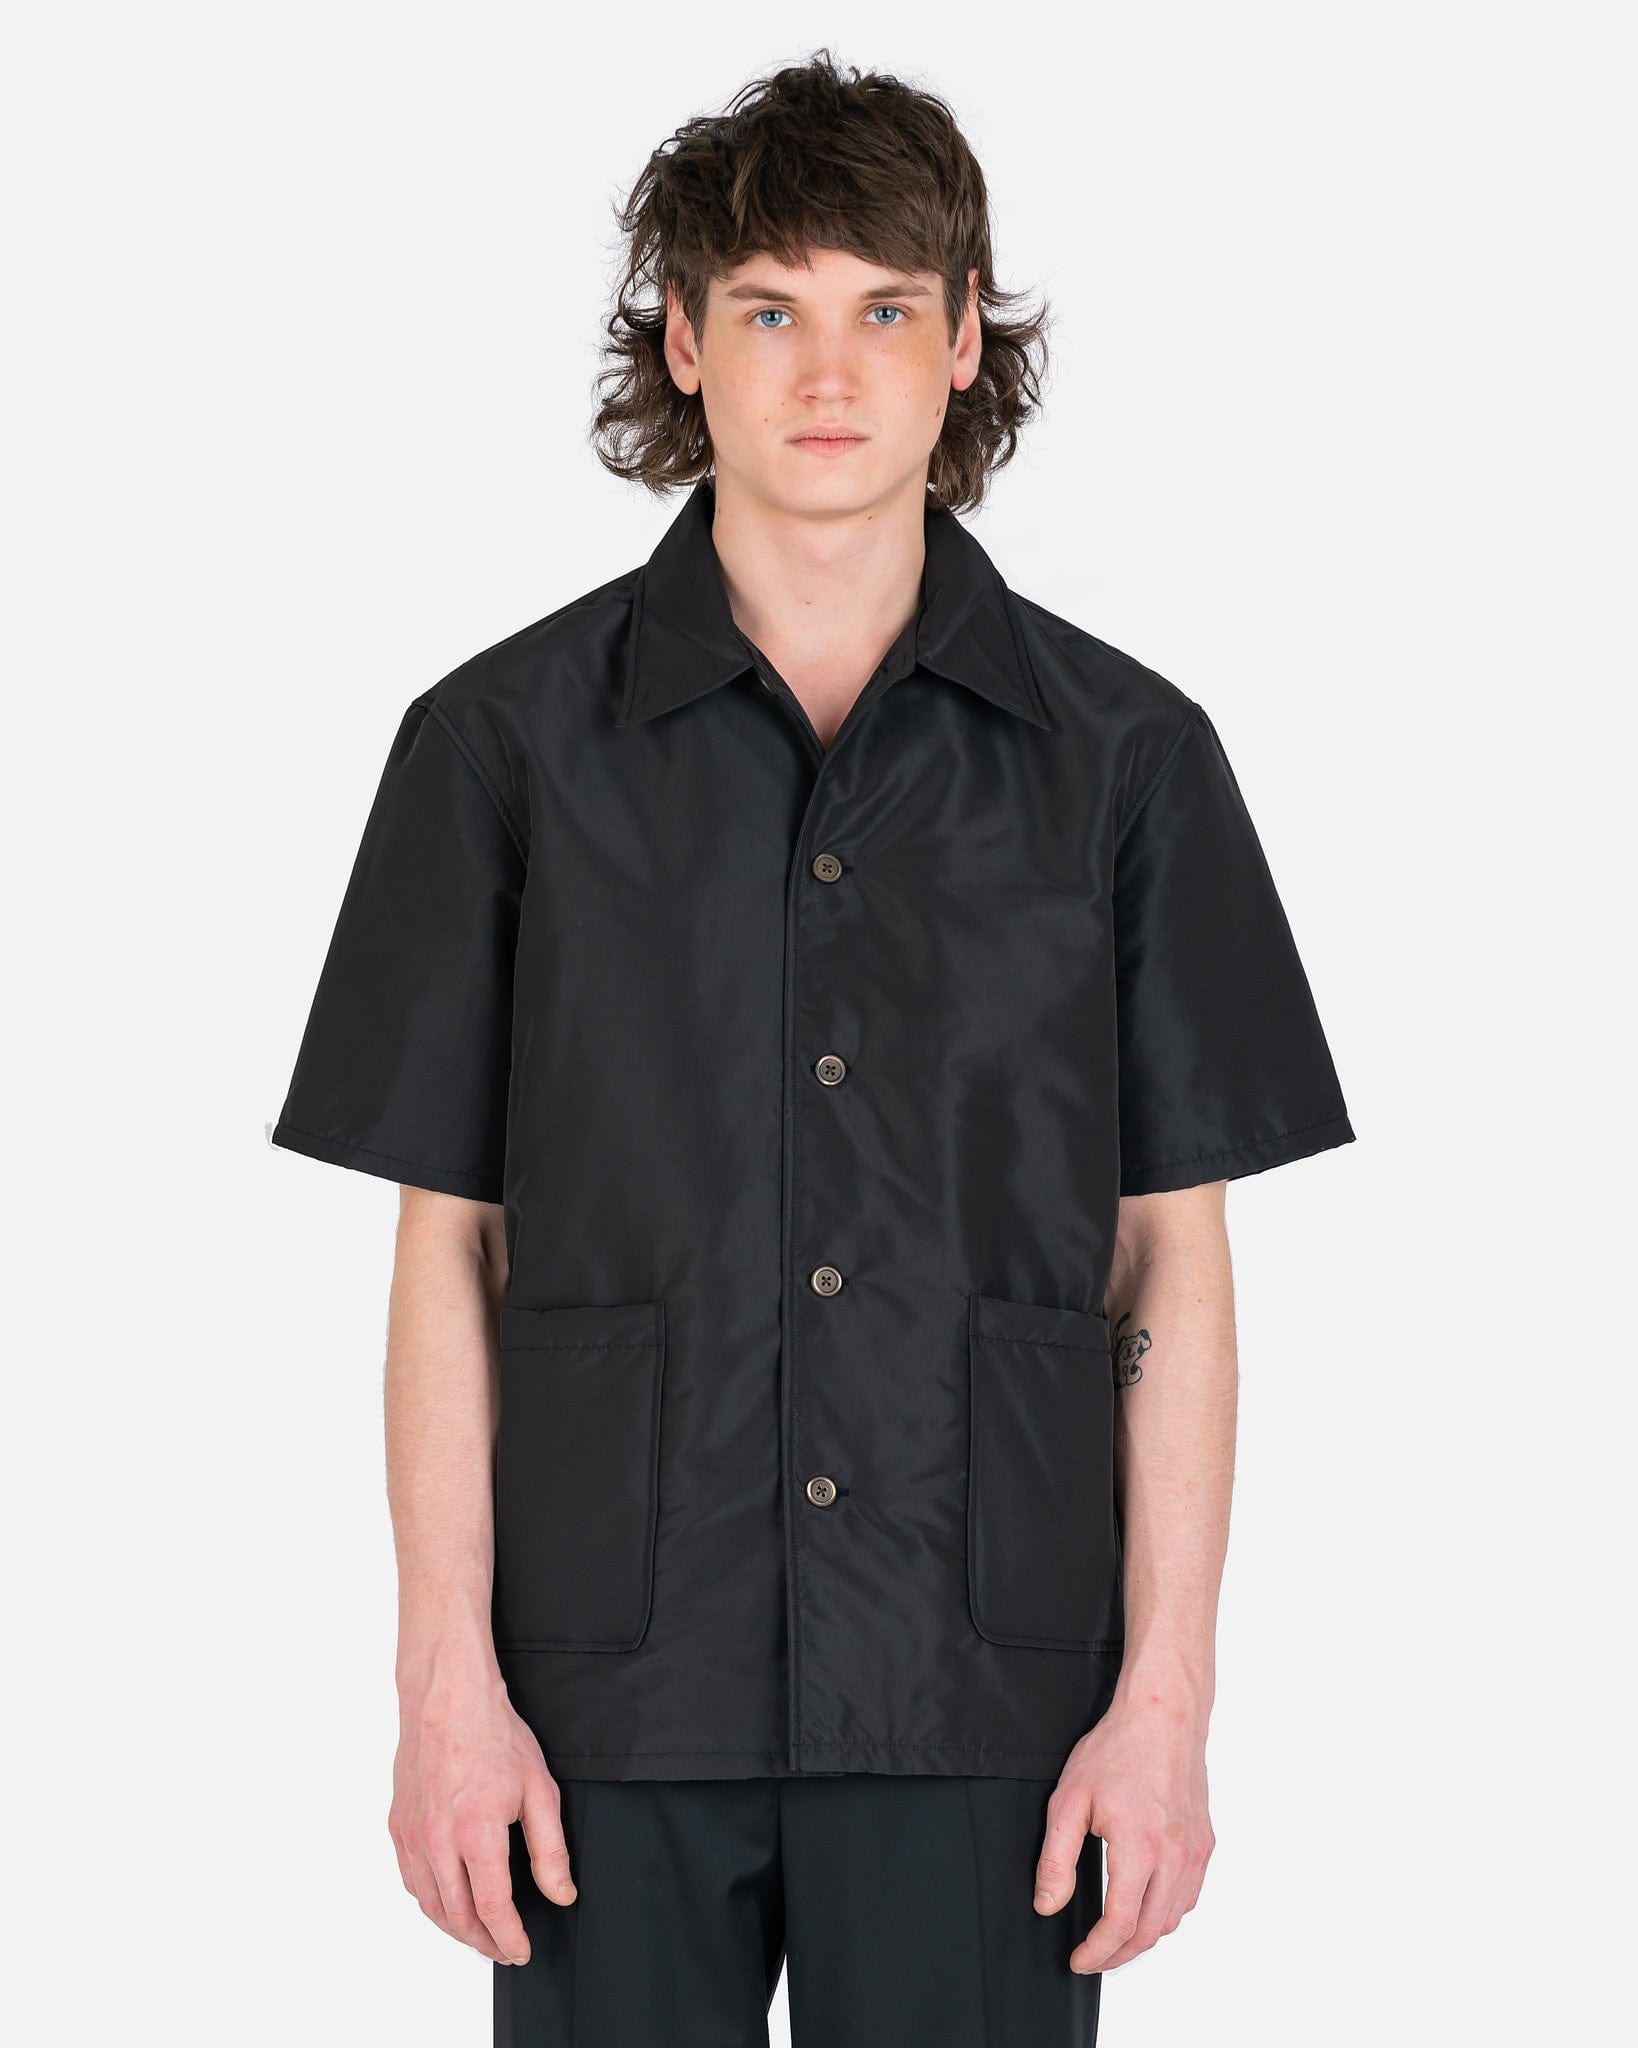 Padded Elder Shortsleeve Shirt in Black